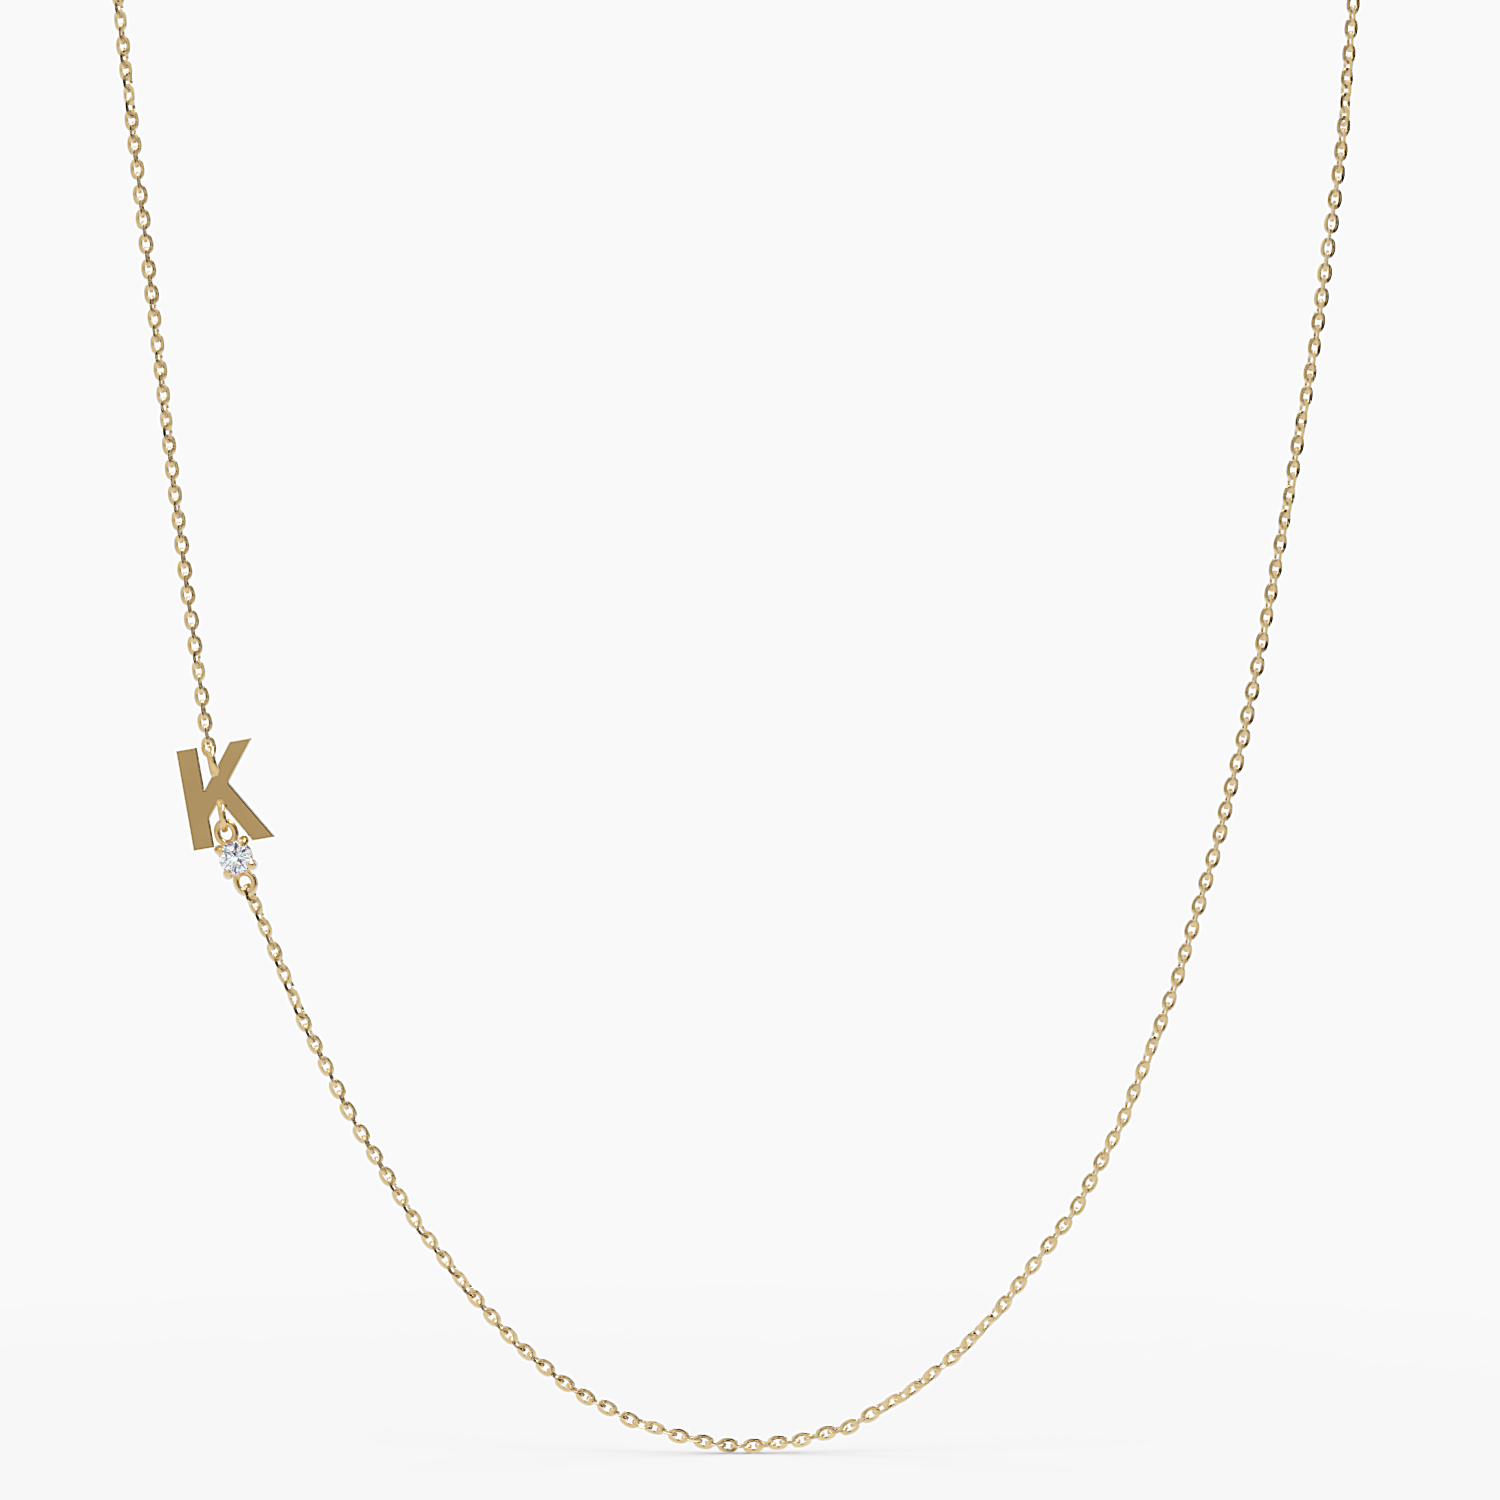 Sideways Initial K Necklace with Diamond